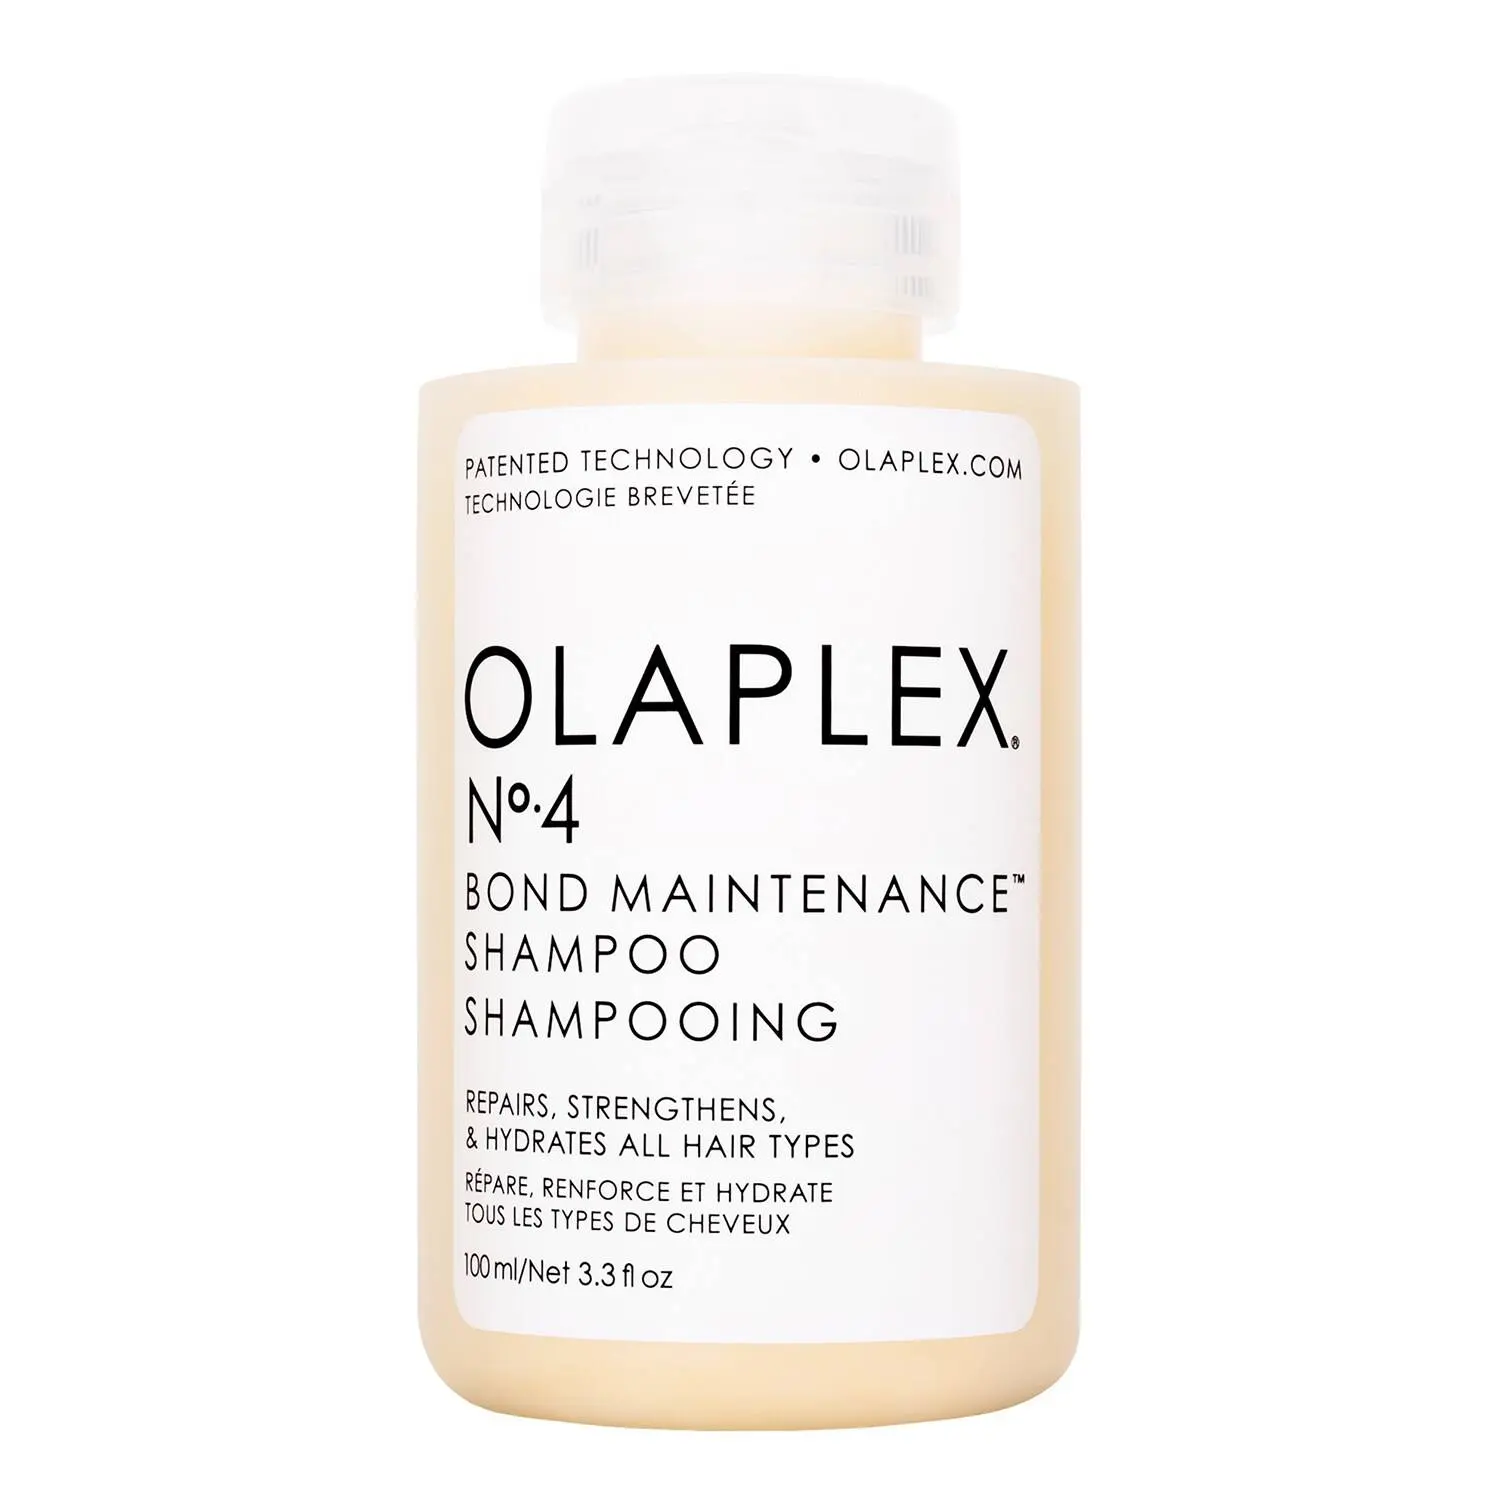 Olaplex No. 4 Bond Maintenance Shampoo Discounts and Cashback